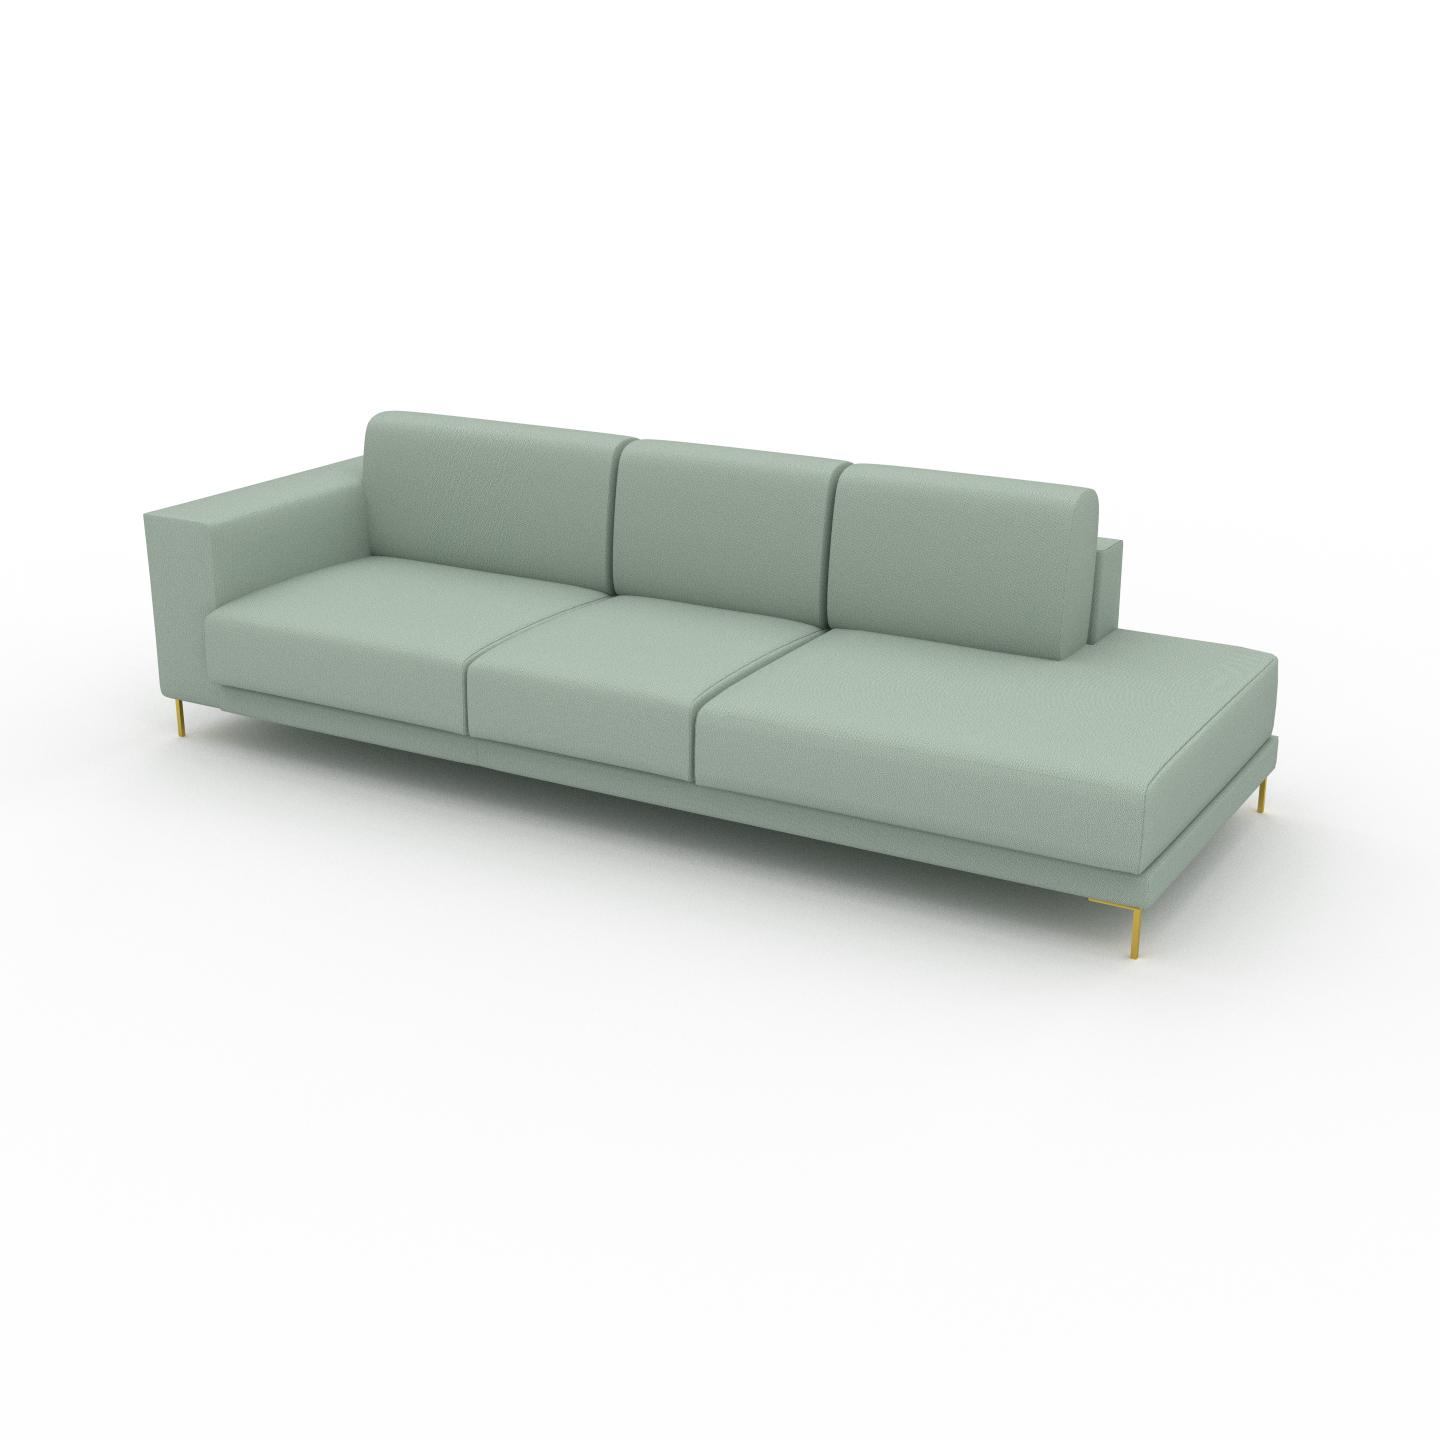 MYCS Sofa 2-Sitzer Minzgrün, mit Gold Strukturgewebe - Elegantes, gemütliches 2-Sitzer Sofa: Hochwertige Qualität, einzigartiges Design - 264 x 75 x 98...